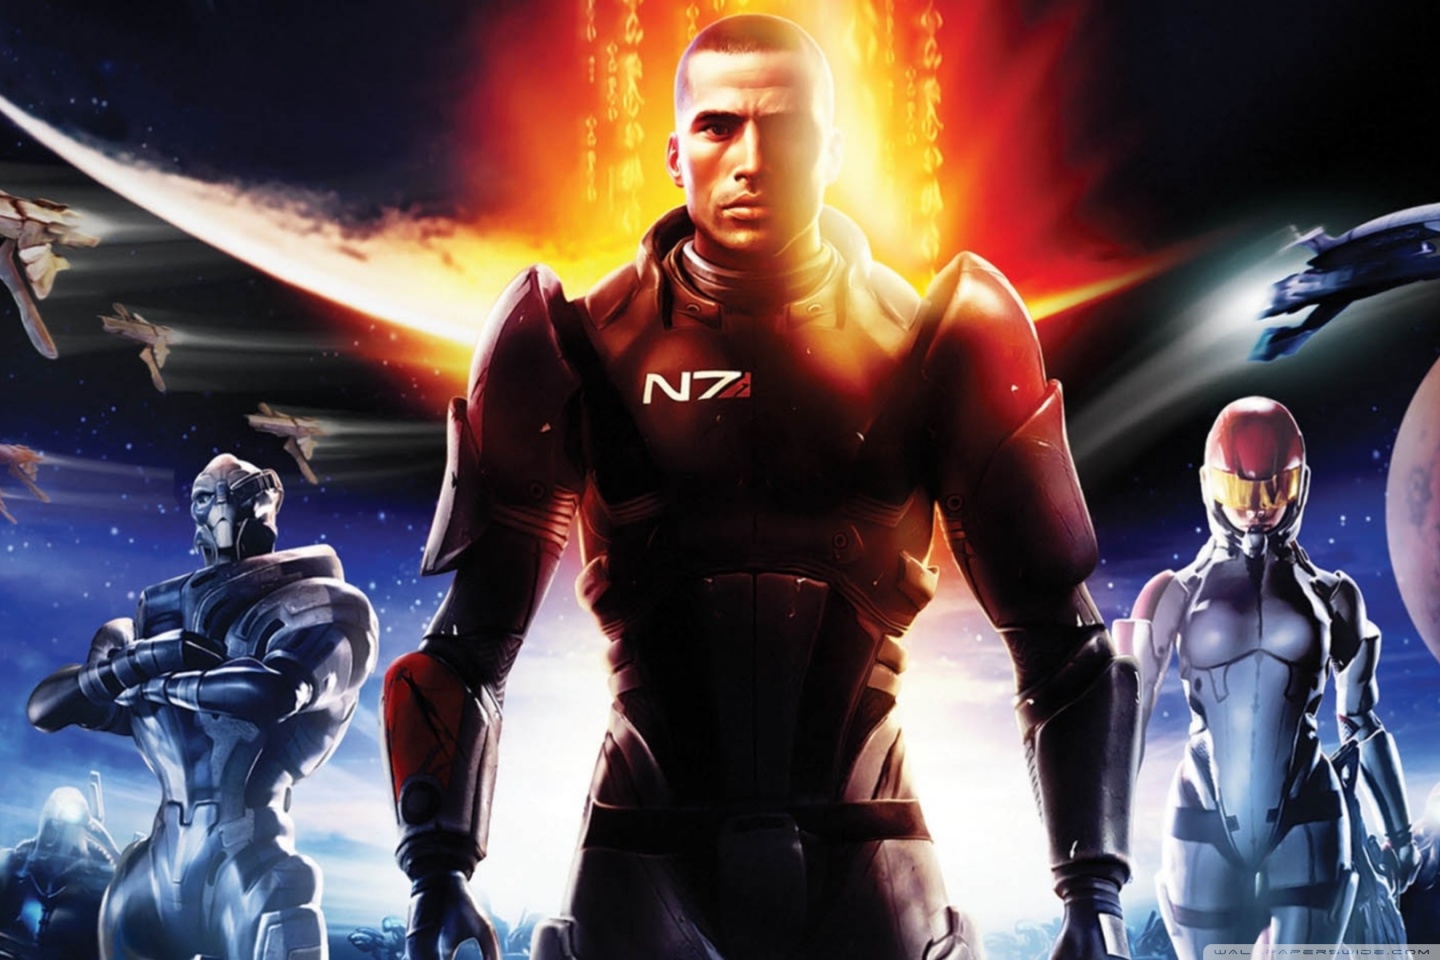 Mass Effect Game Ultra HD Desktop Background Wallpaper for 4K UHD TV, Widescreen & UltraWide Desktop & Laptop, Tablet